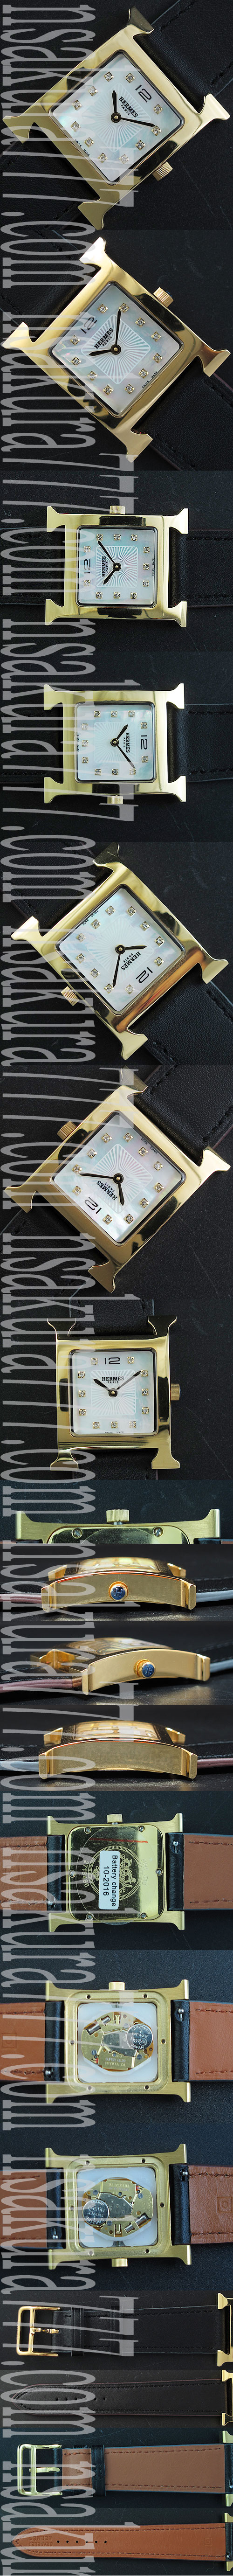 高級腕時計 エルメス　アワー ，クォーツムーブメント  スカイブルー  硬質クリスタル  ブラック革ベルト 生活防水